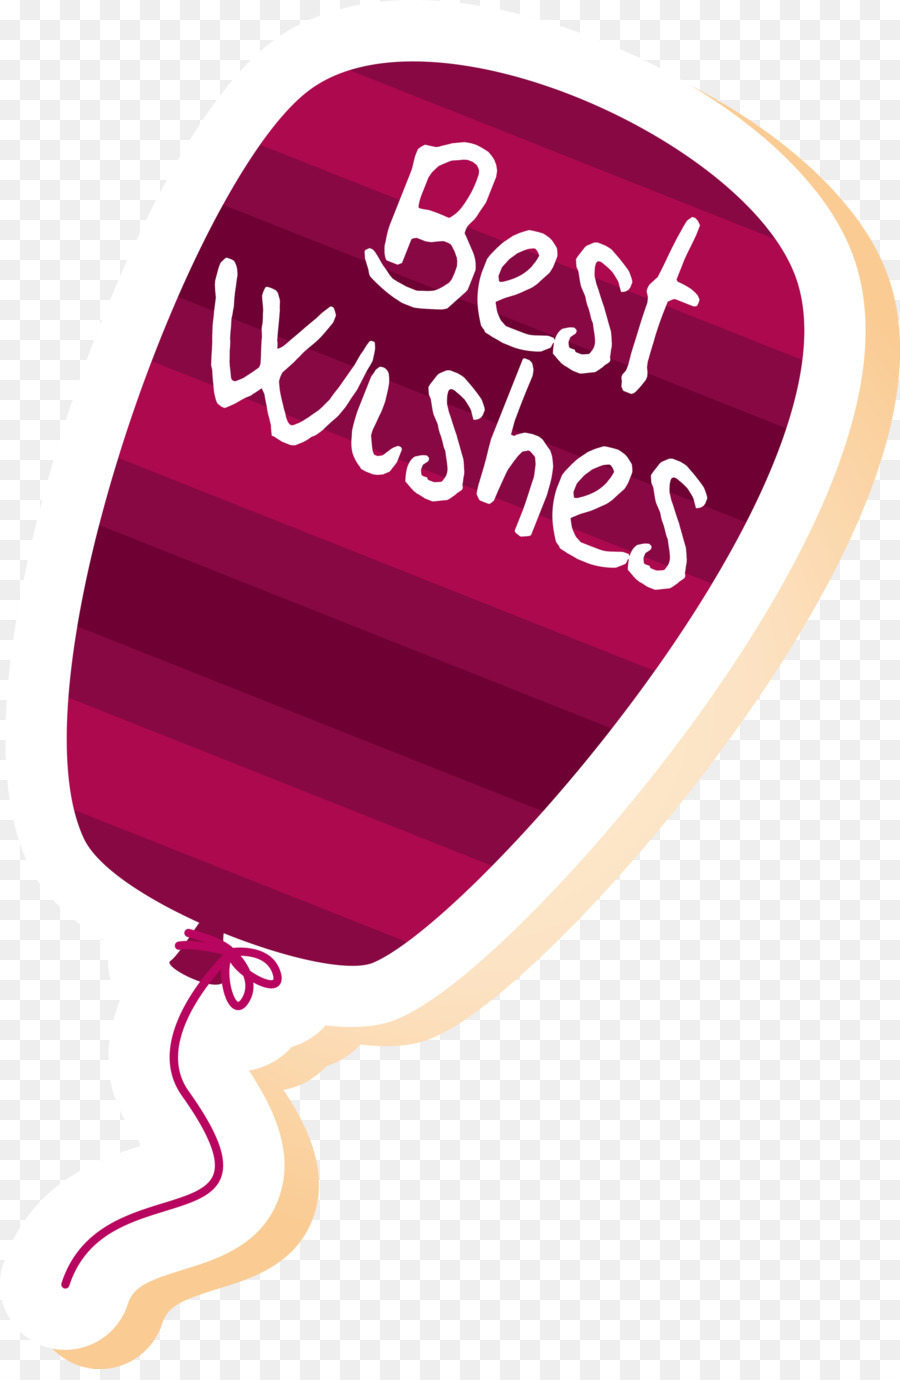 Congratulation balloon best wishes